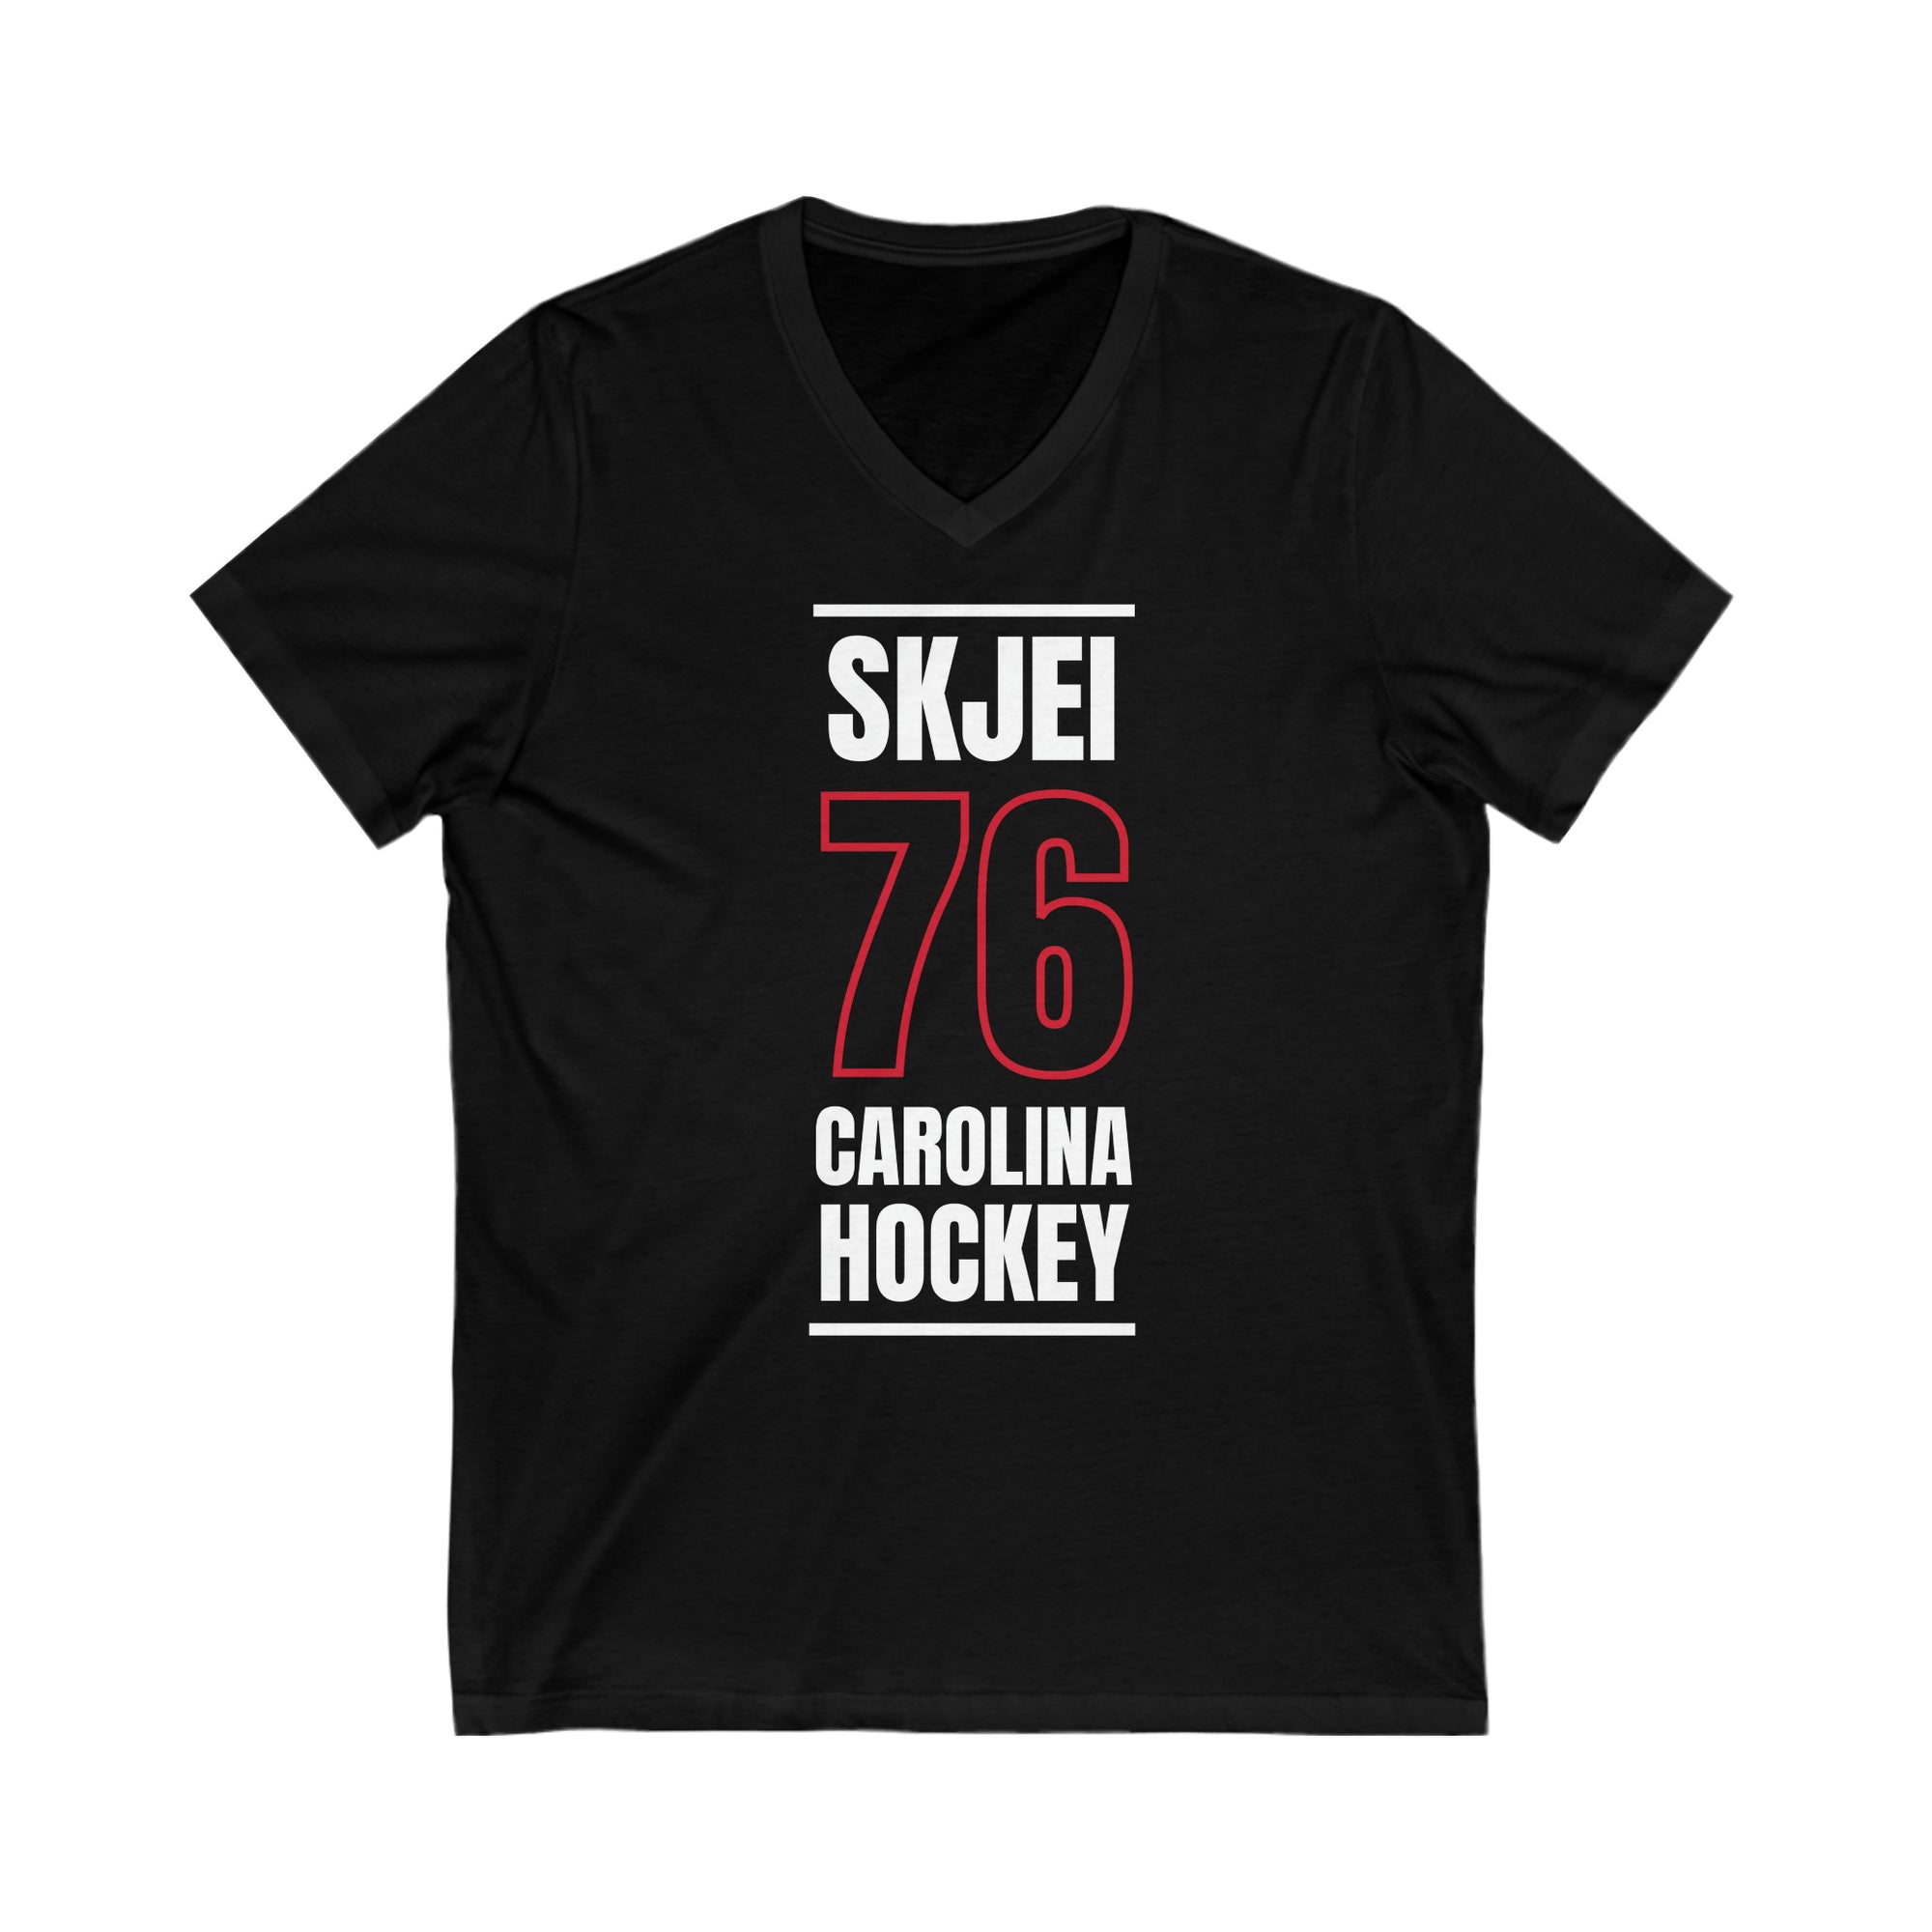 Skjei 76 Carolina Hockey Black Vertical Design Unisex V-Neck Tee